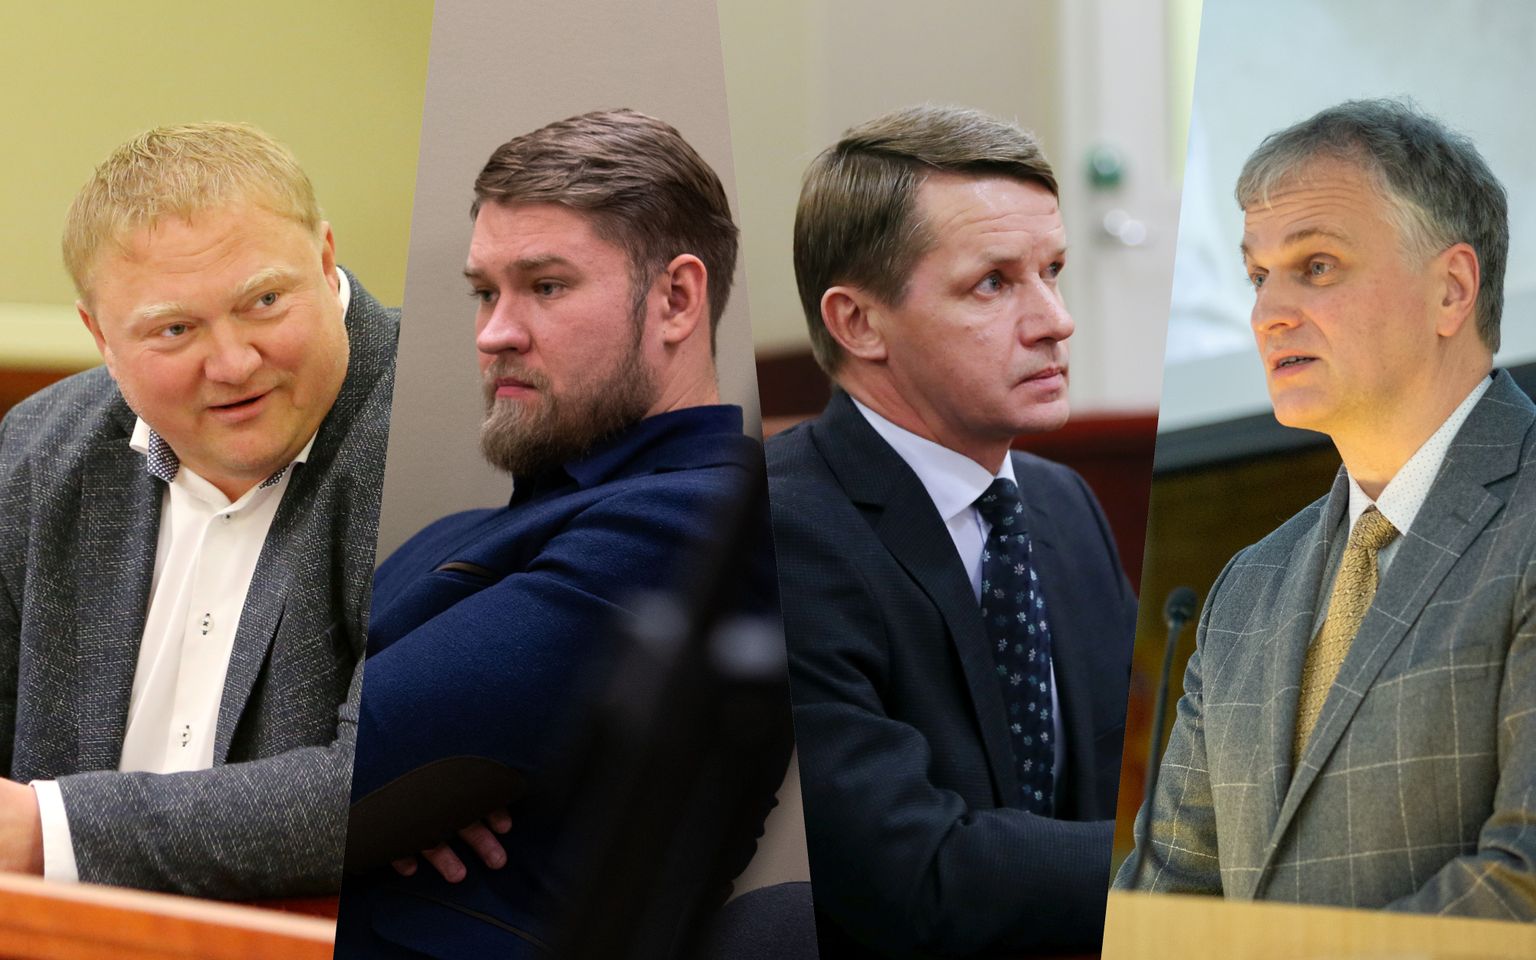 Neli Tartu abilinnapead, keda on kahtlustatud korruptsioonis: Kajar Lember, Artjom Suvorov, Valvo Semilarski ja Priit Humal.